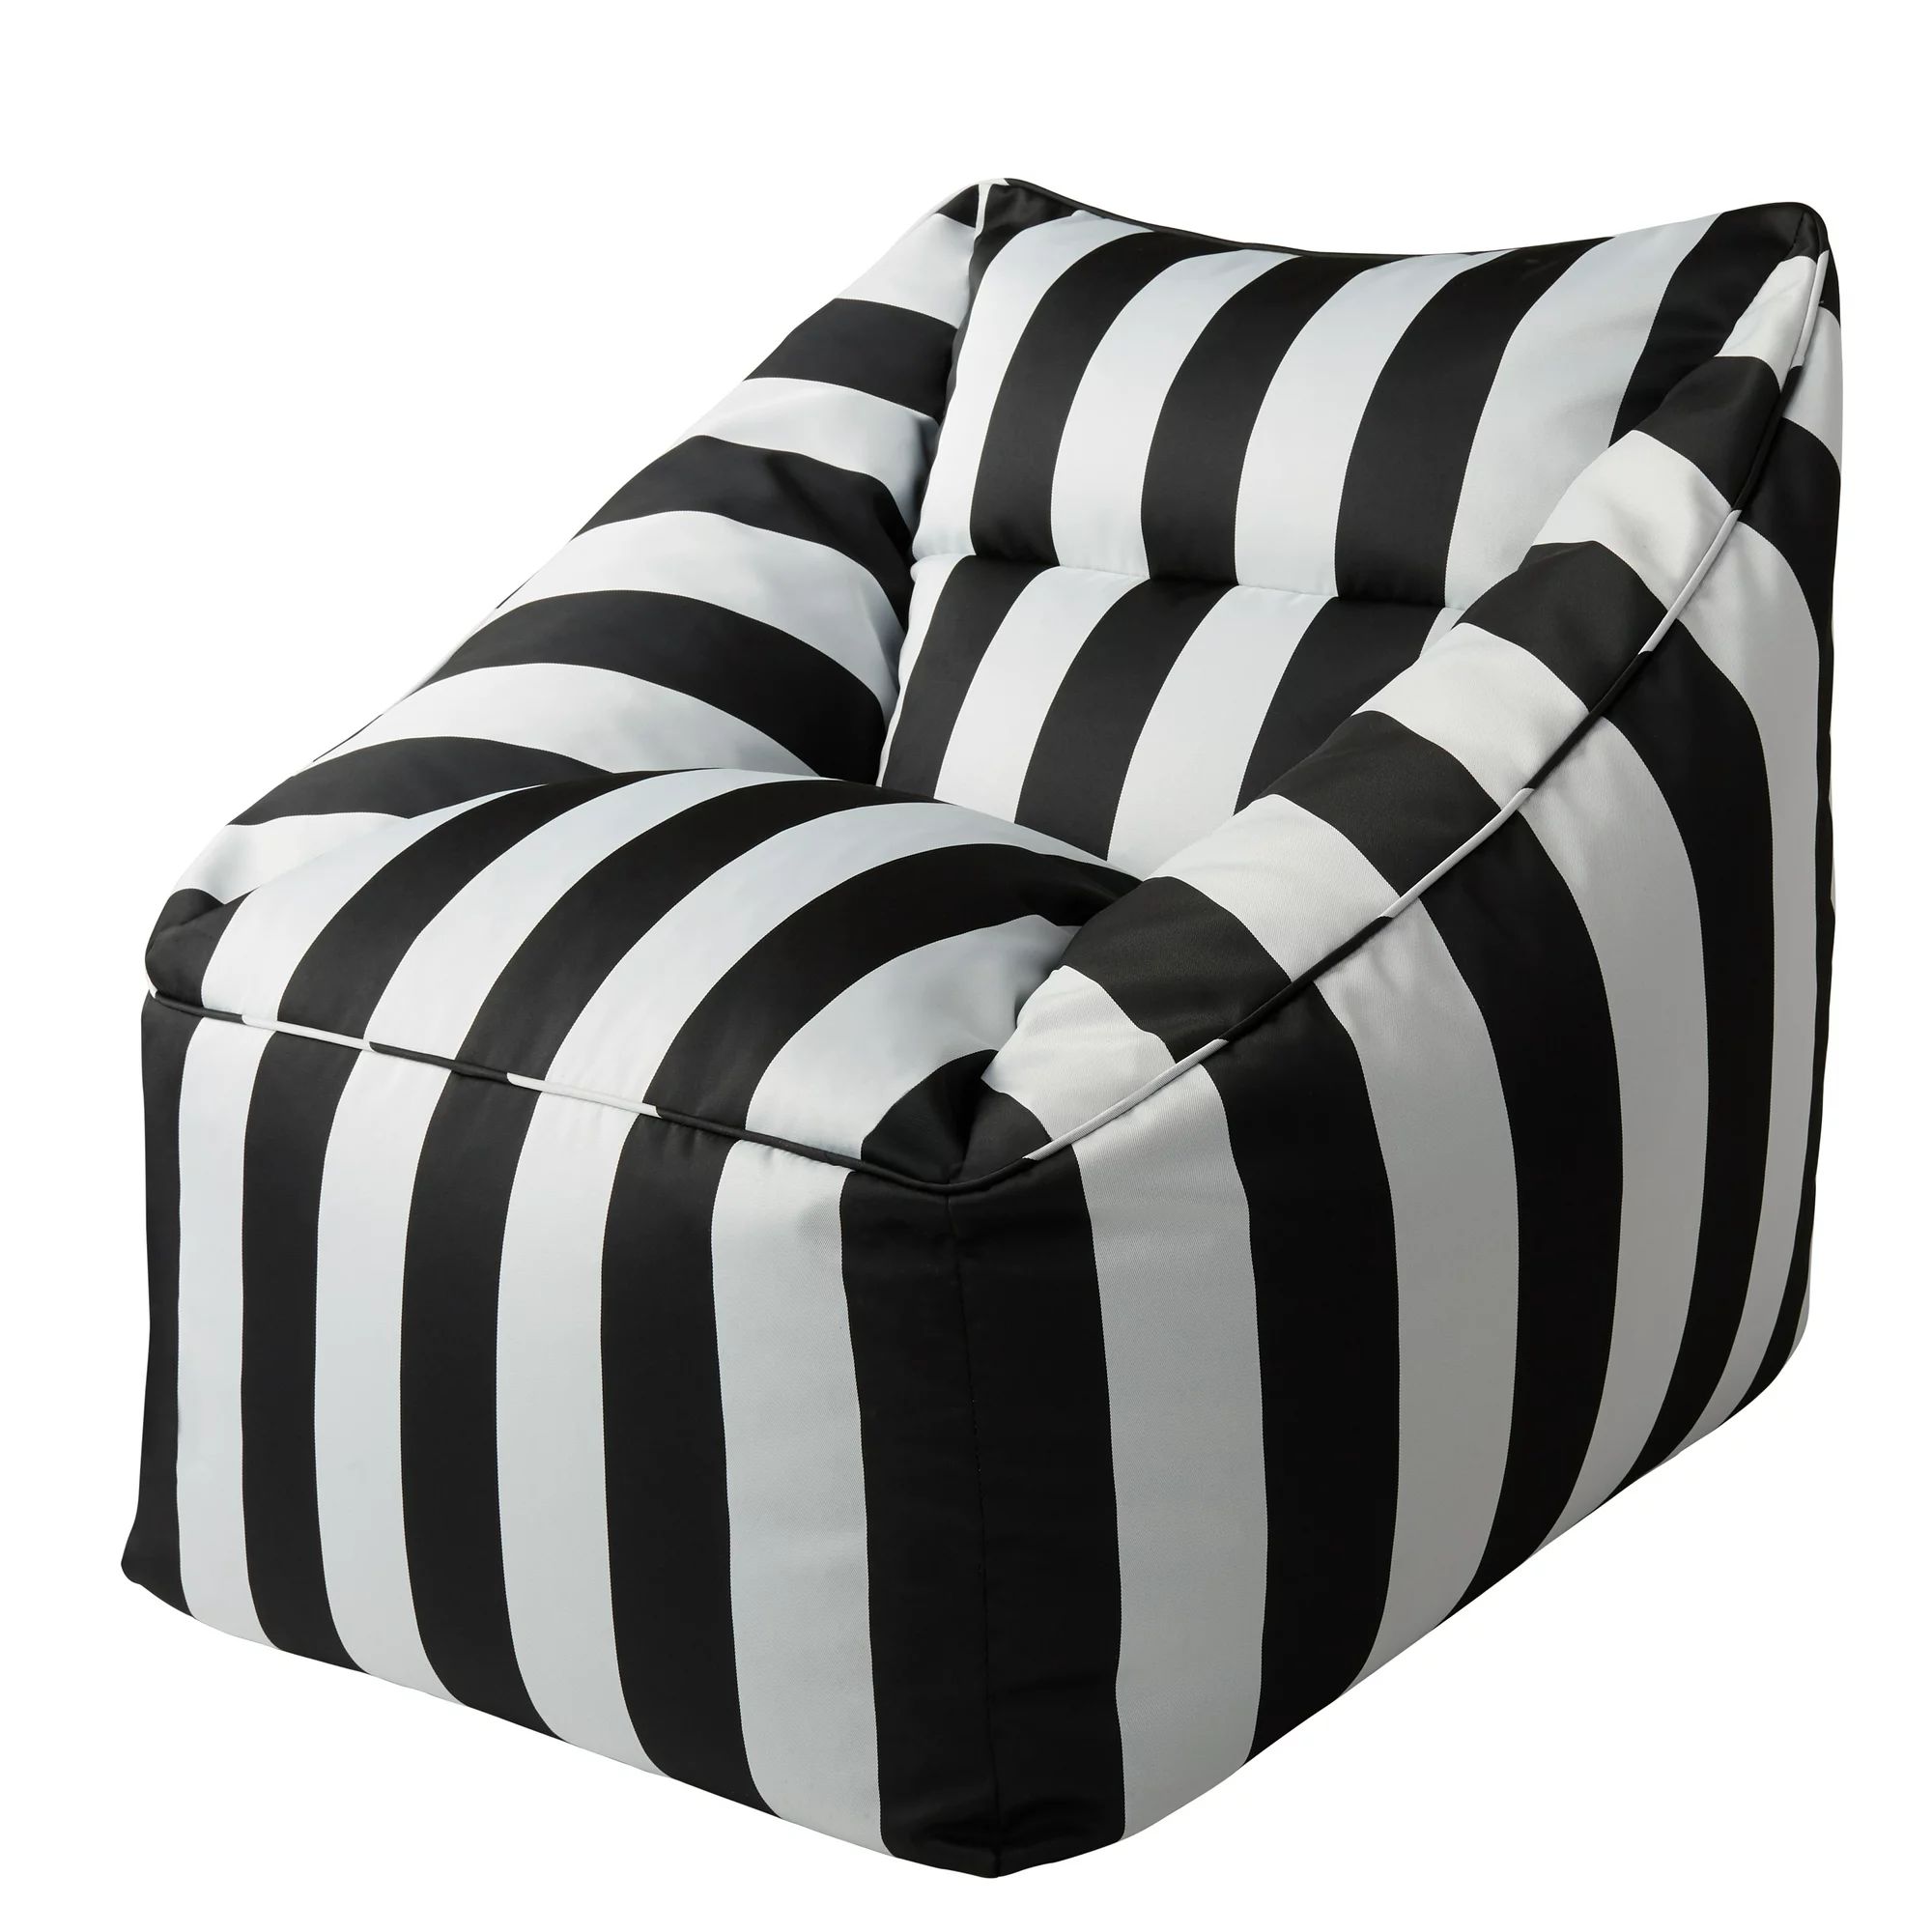 Better Homes & Gardens Dream Bean Patio Bean Bag Chair, Black and White Cabana Stripes | Walmart (US)